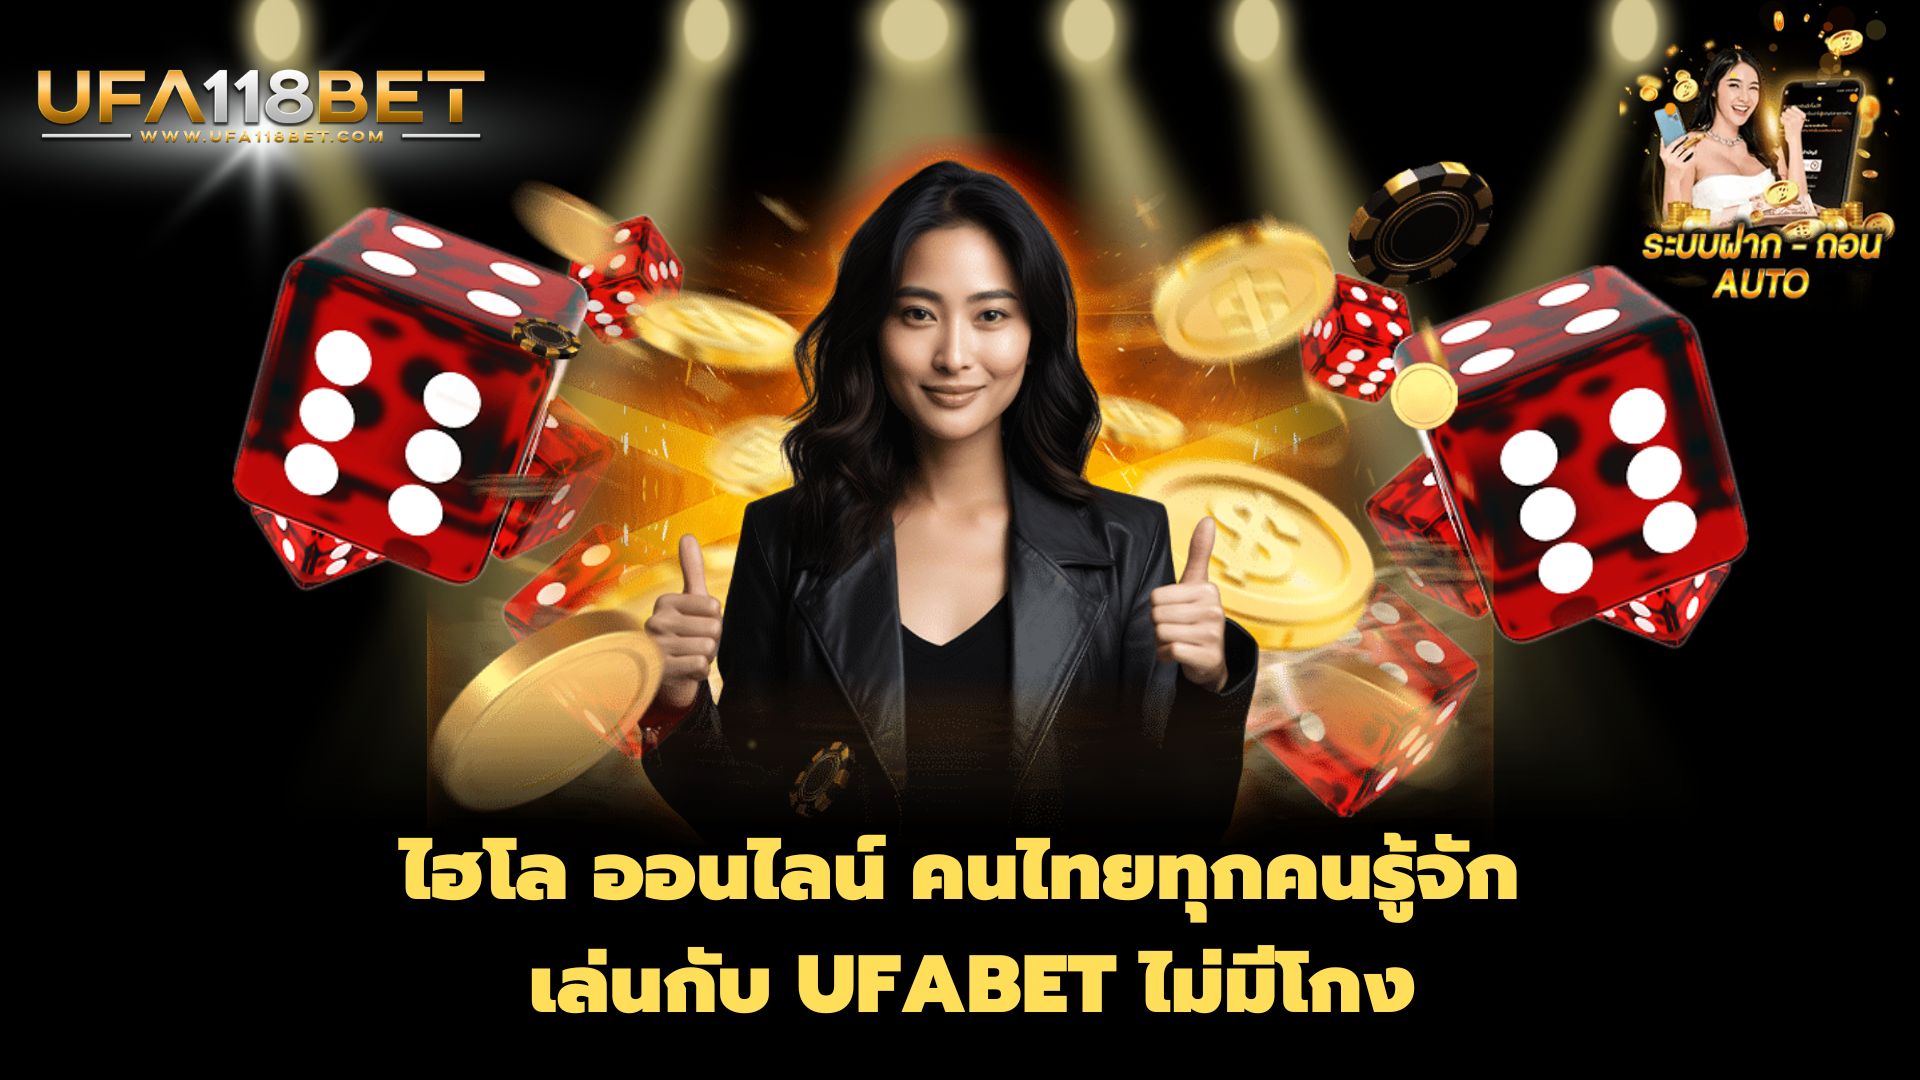 ไฮโล ออนไลน์ คนไทยทุกคนรู้จัก เล่นกับ UFABET ไม่มีโกง